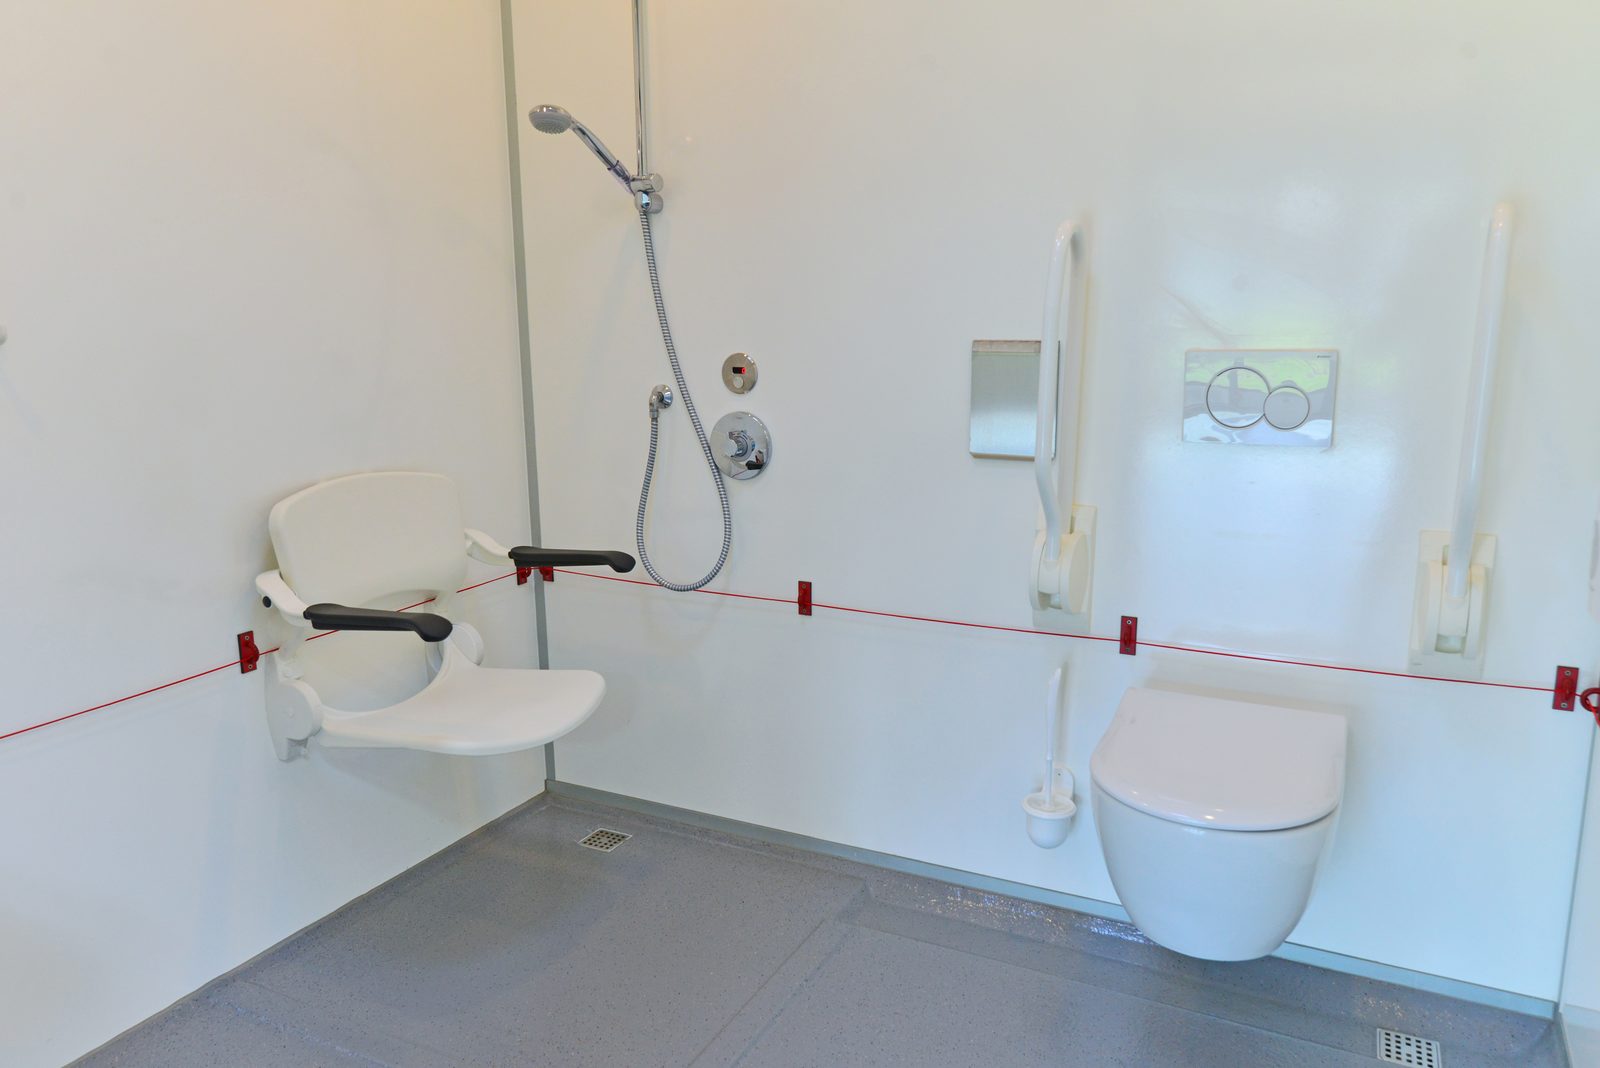 Toilette für behinderte Personen